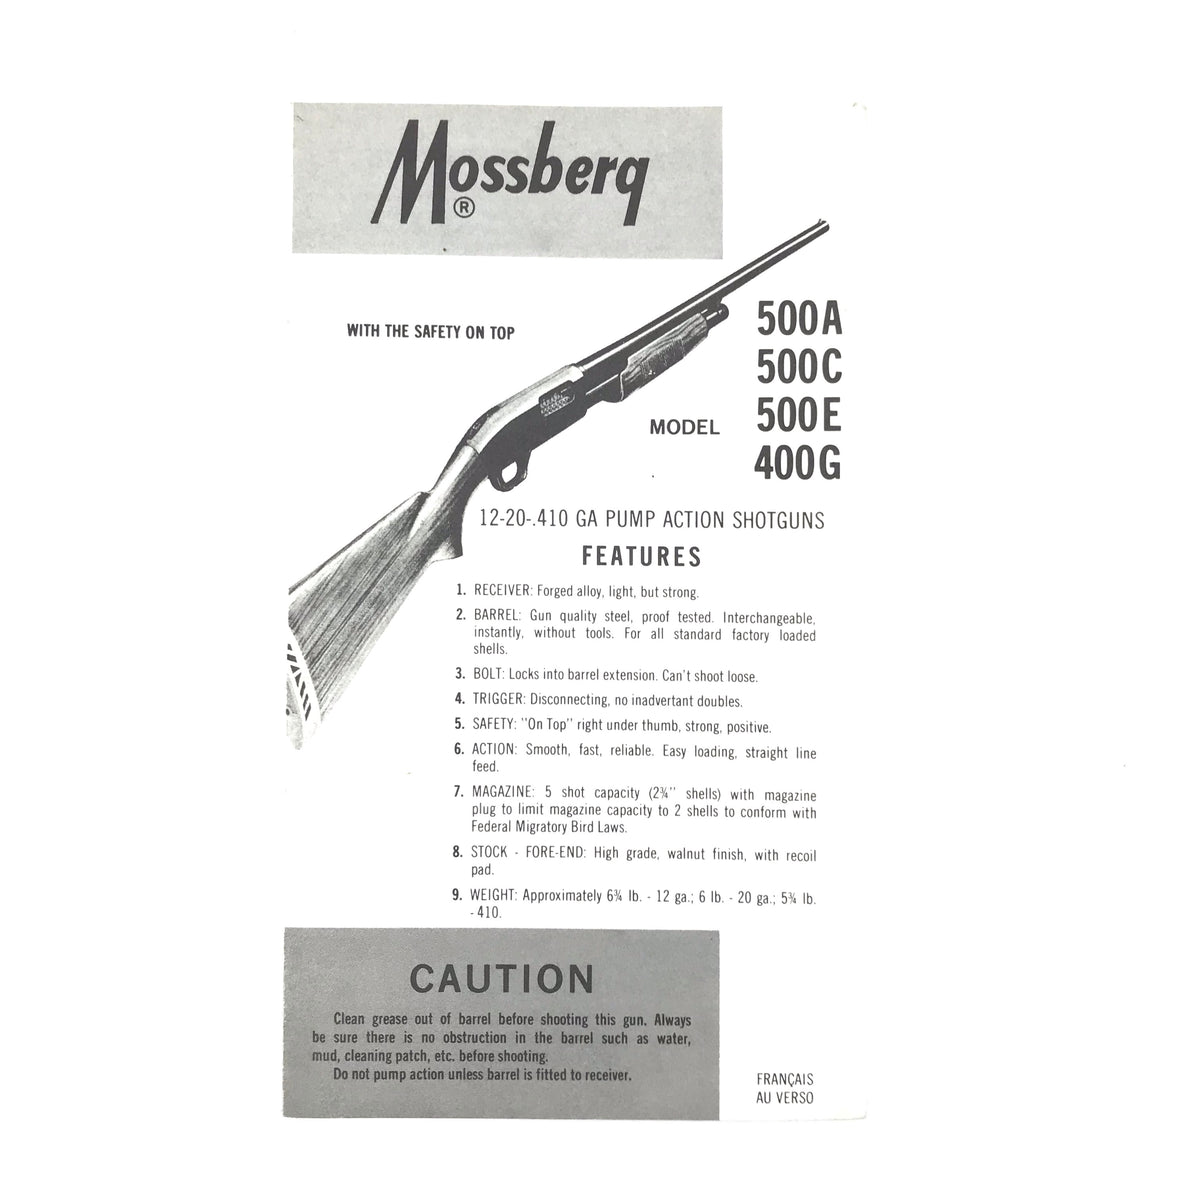 Mossberg Mod. 500A/500C/500E/400G Pump Action Shotguns Features Pamphlet